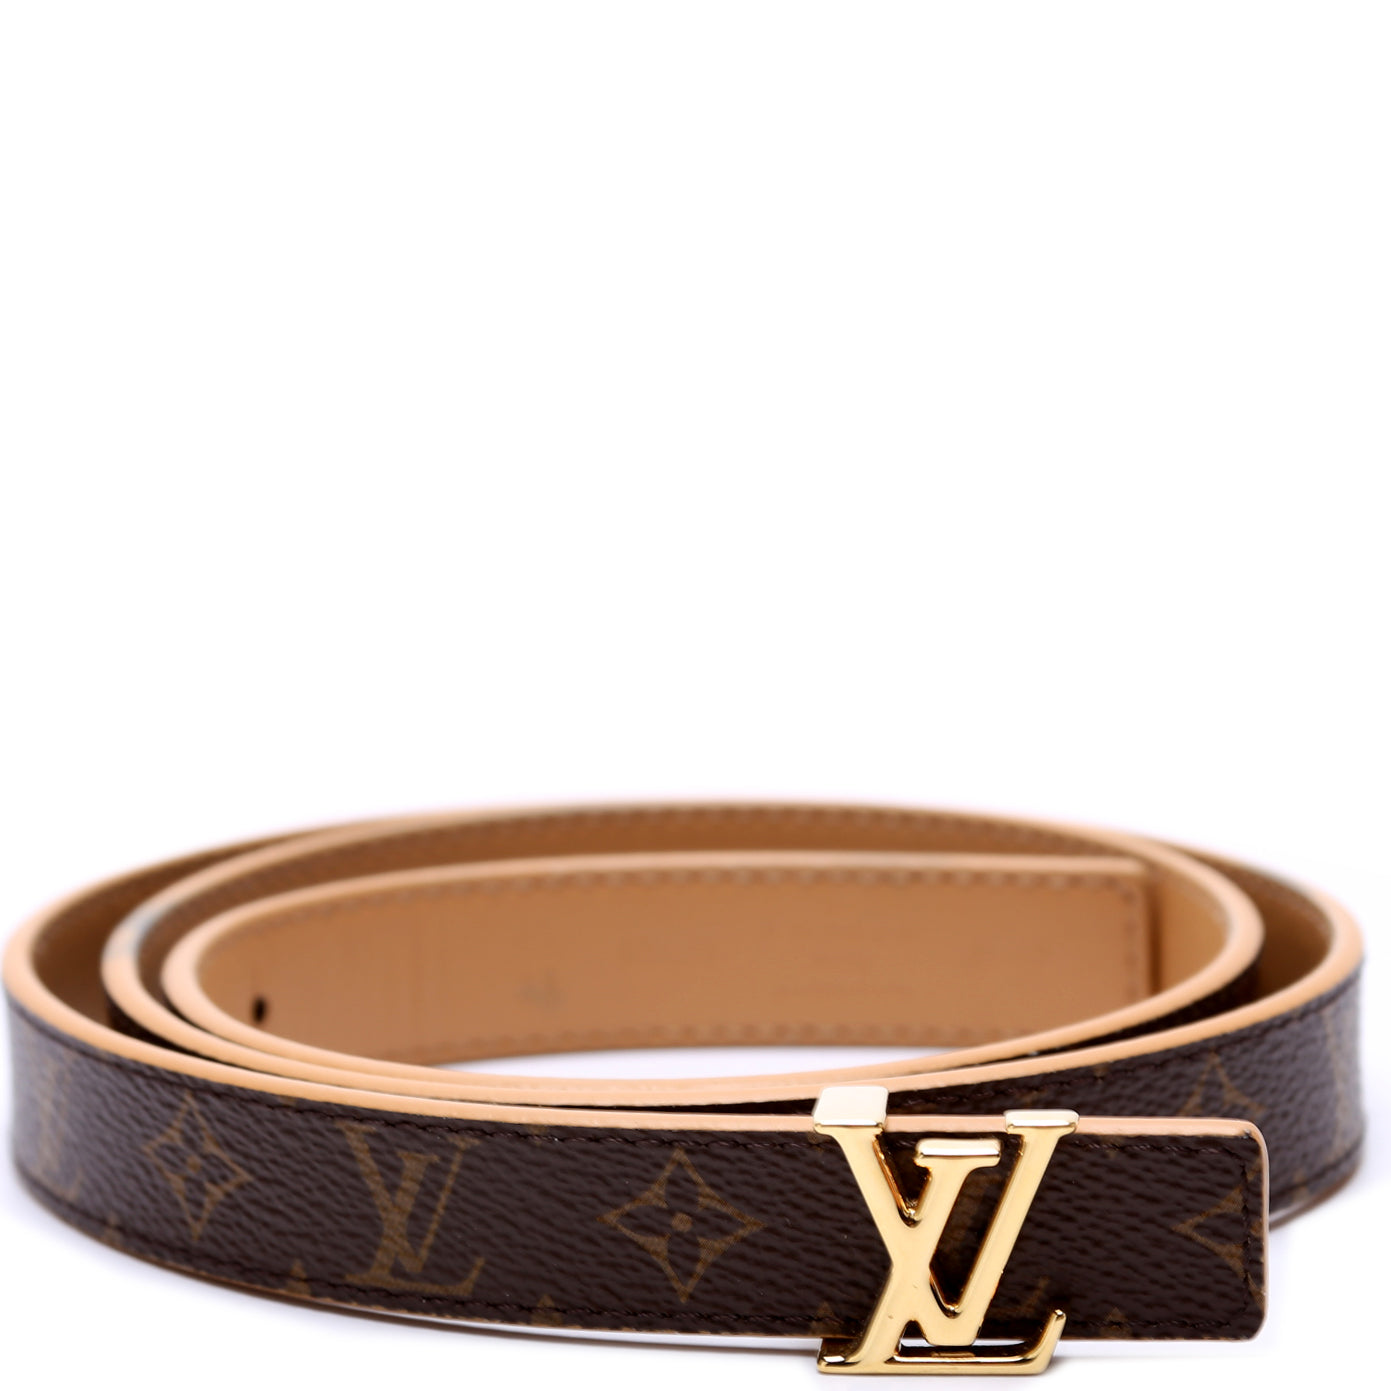 Louis Vuitton Lv Iconic 20Mm Reversible Belt (M0527V)